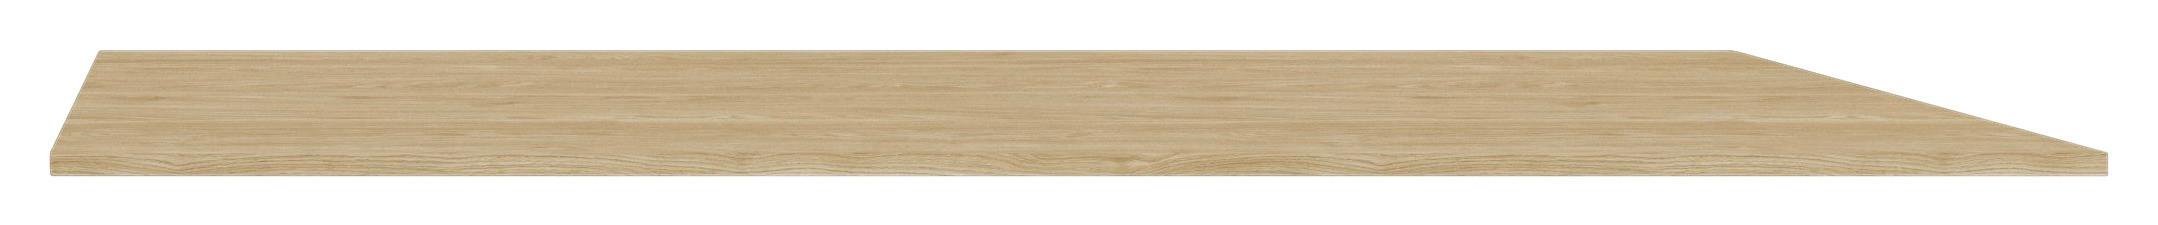 Vrchní Deska Unit-Elements - barvy dubu, Moderní, kompozitní dřevo (137/42/1,6cm) - Ondega